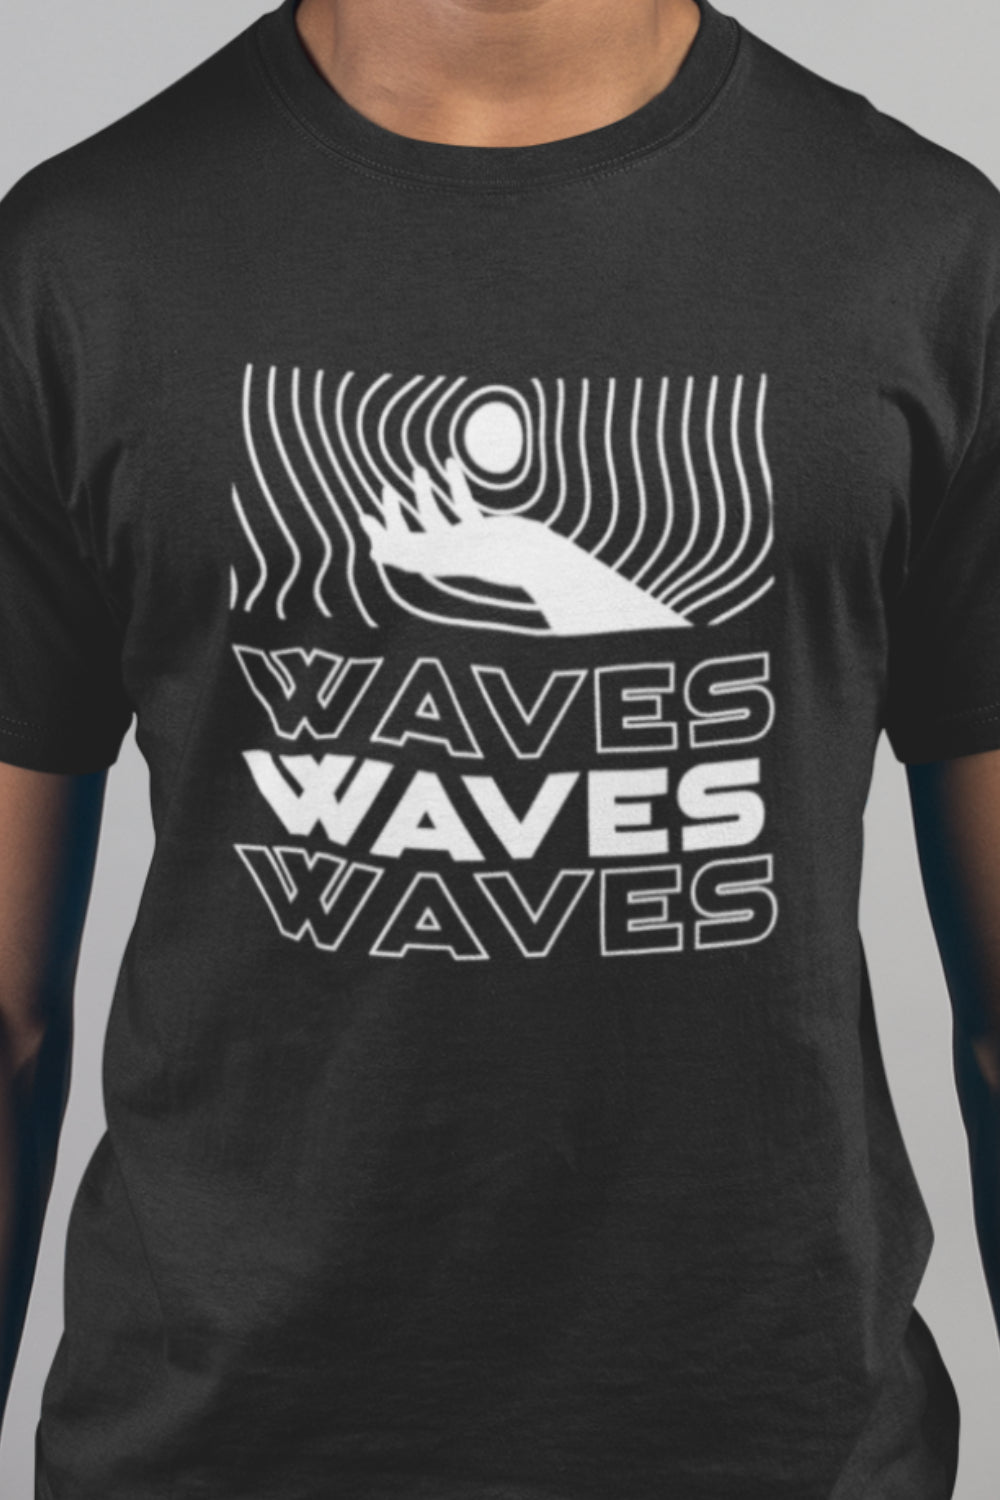 Waves Graphic Printed Black Tshirt